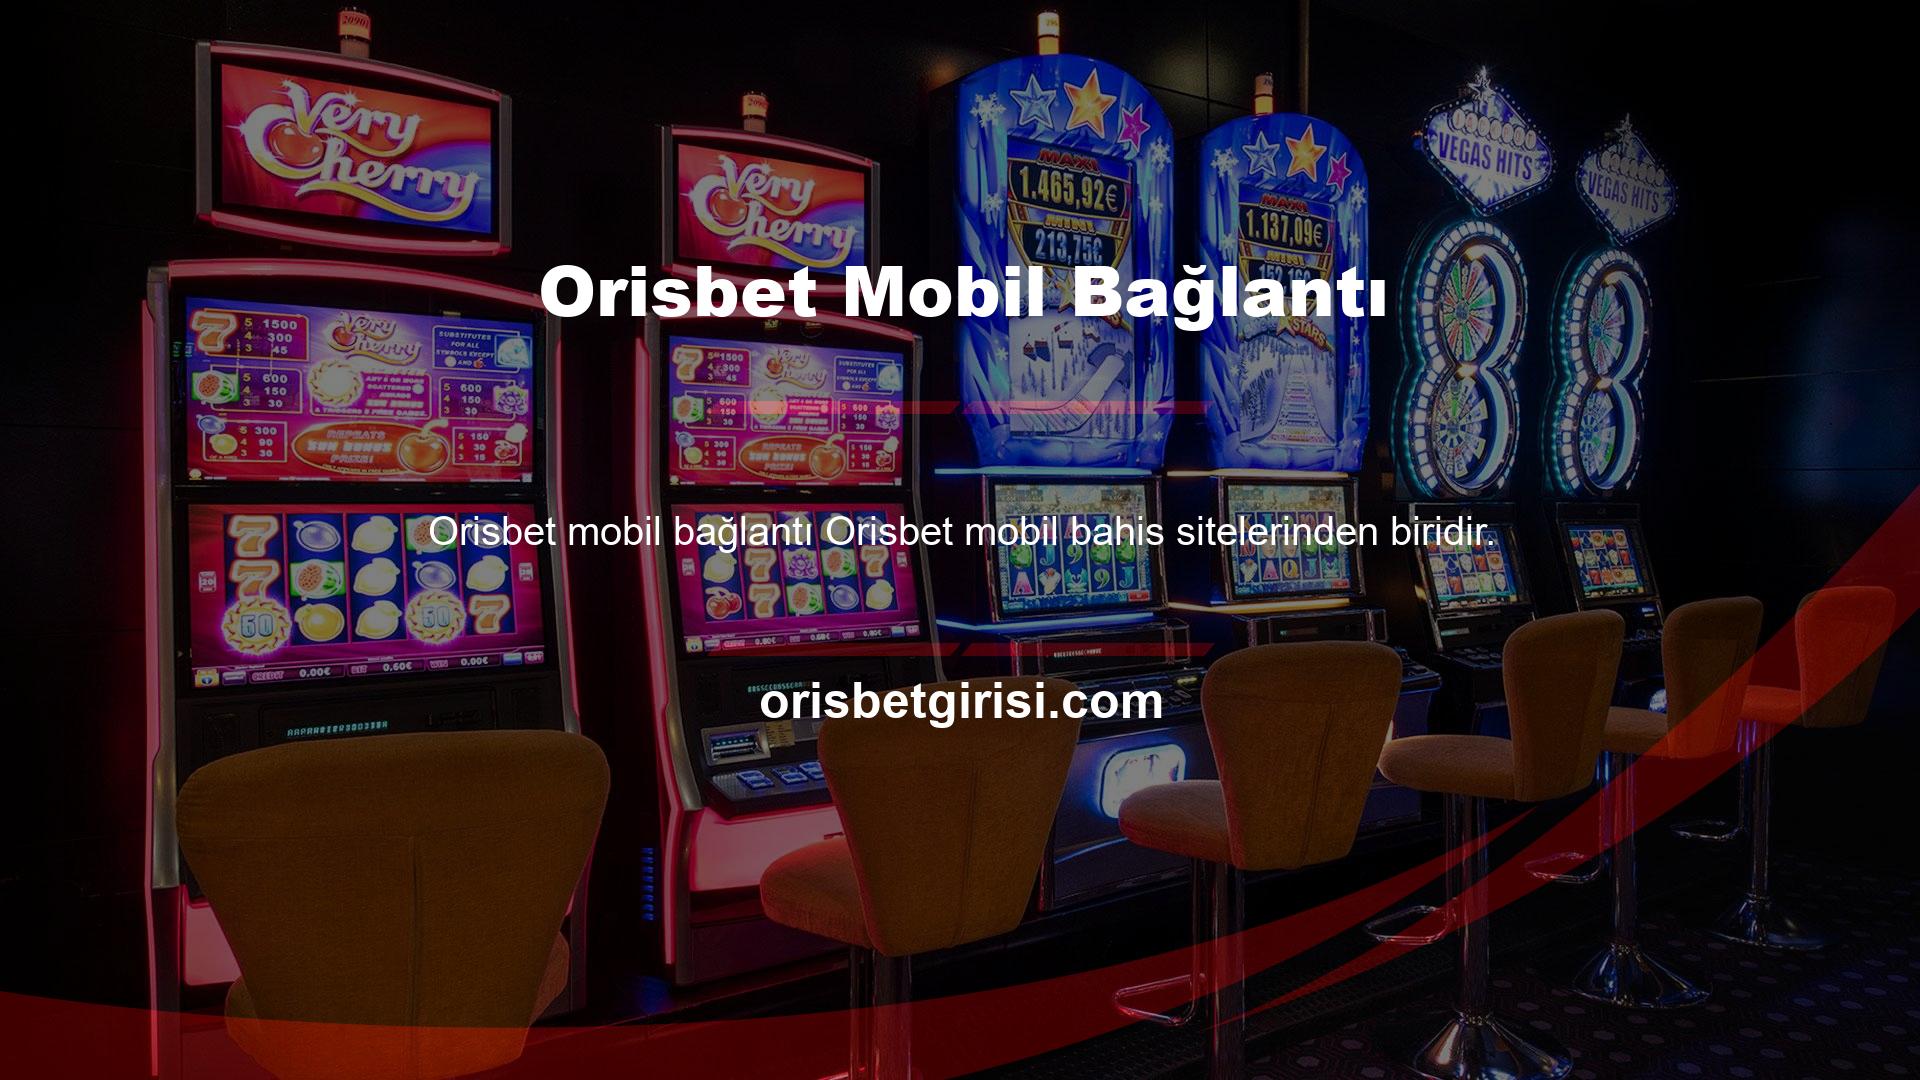 Orisbet, mobil bağlantı ile tüm casino oyunlarını cep telefonunuzda oynamanıza izin verir